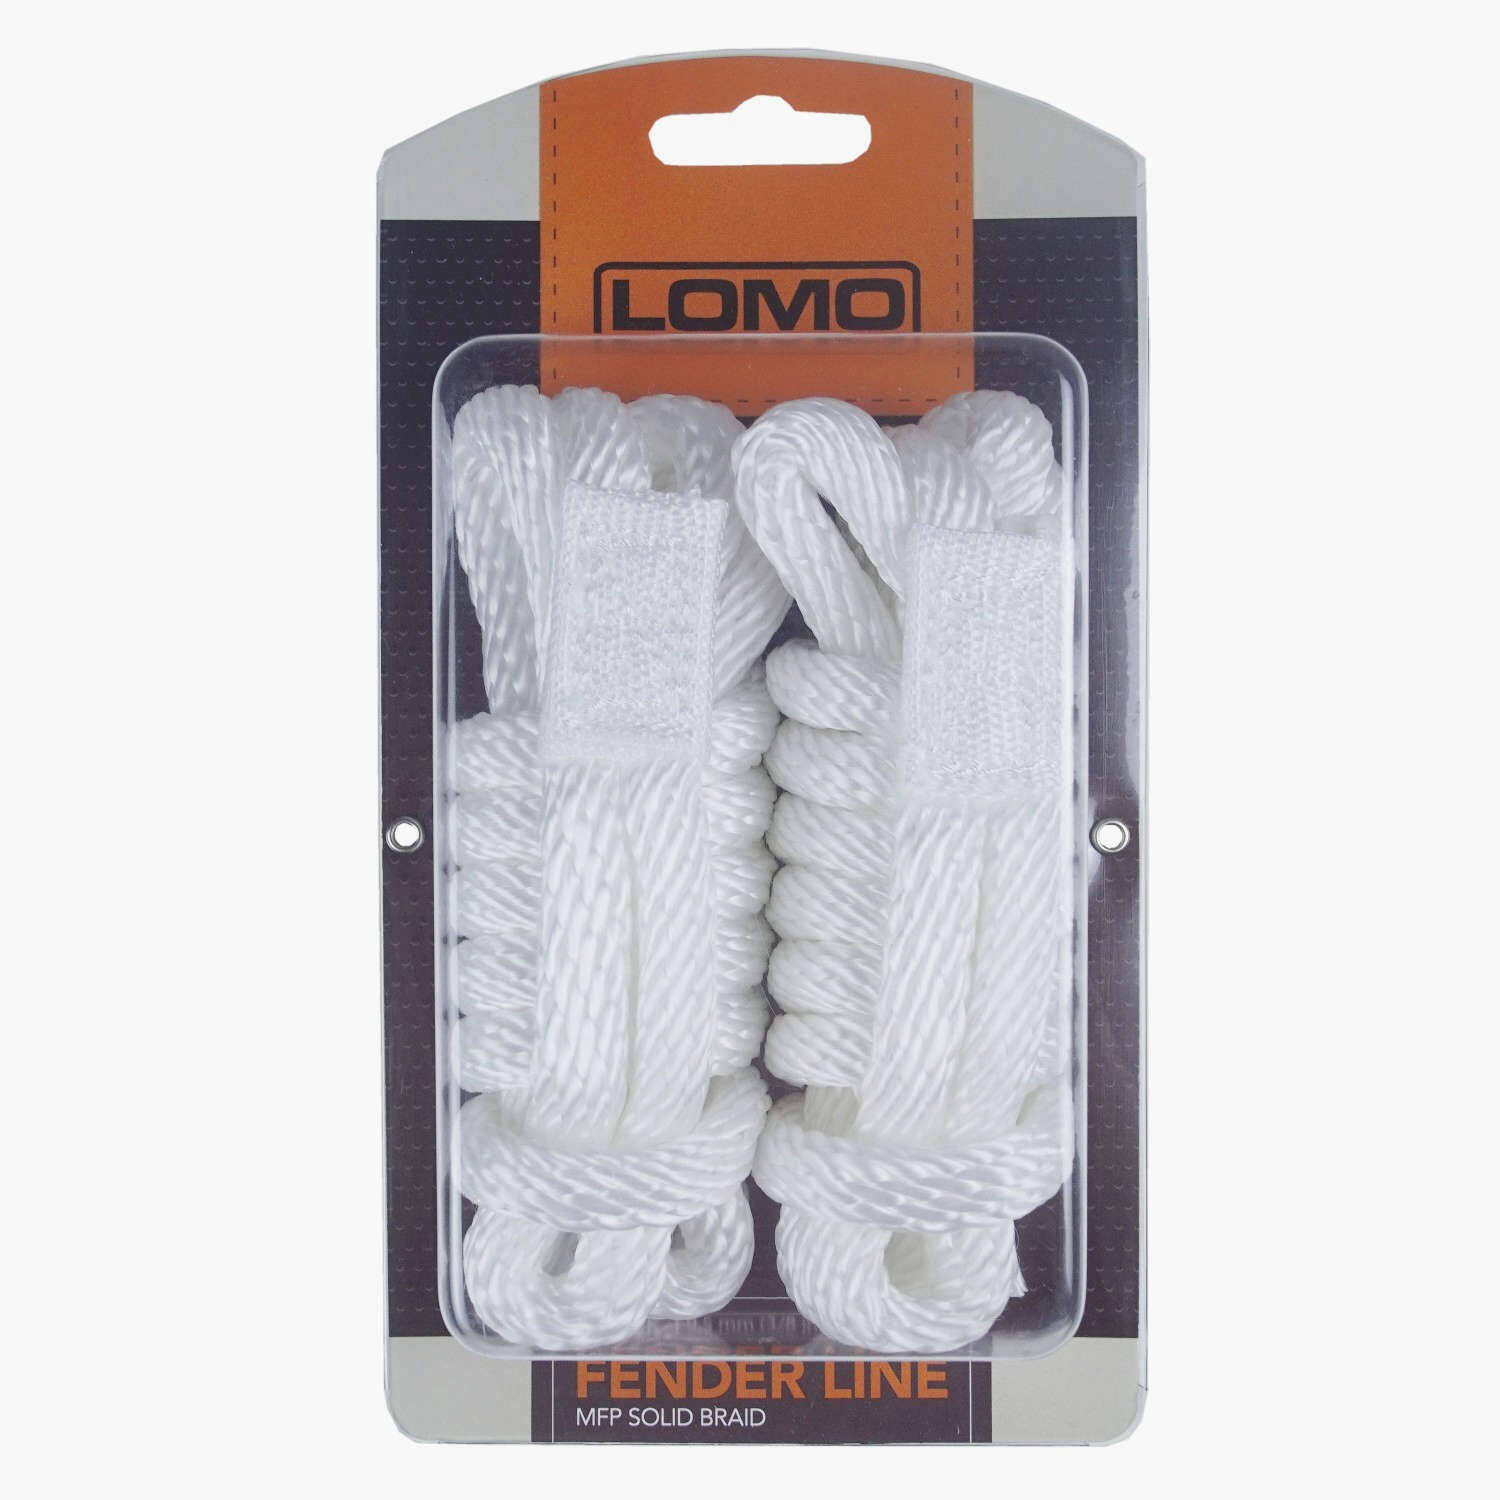 LOMO Lomo Fender Line 2 pack, MFP Solid Braid Rope with Loop